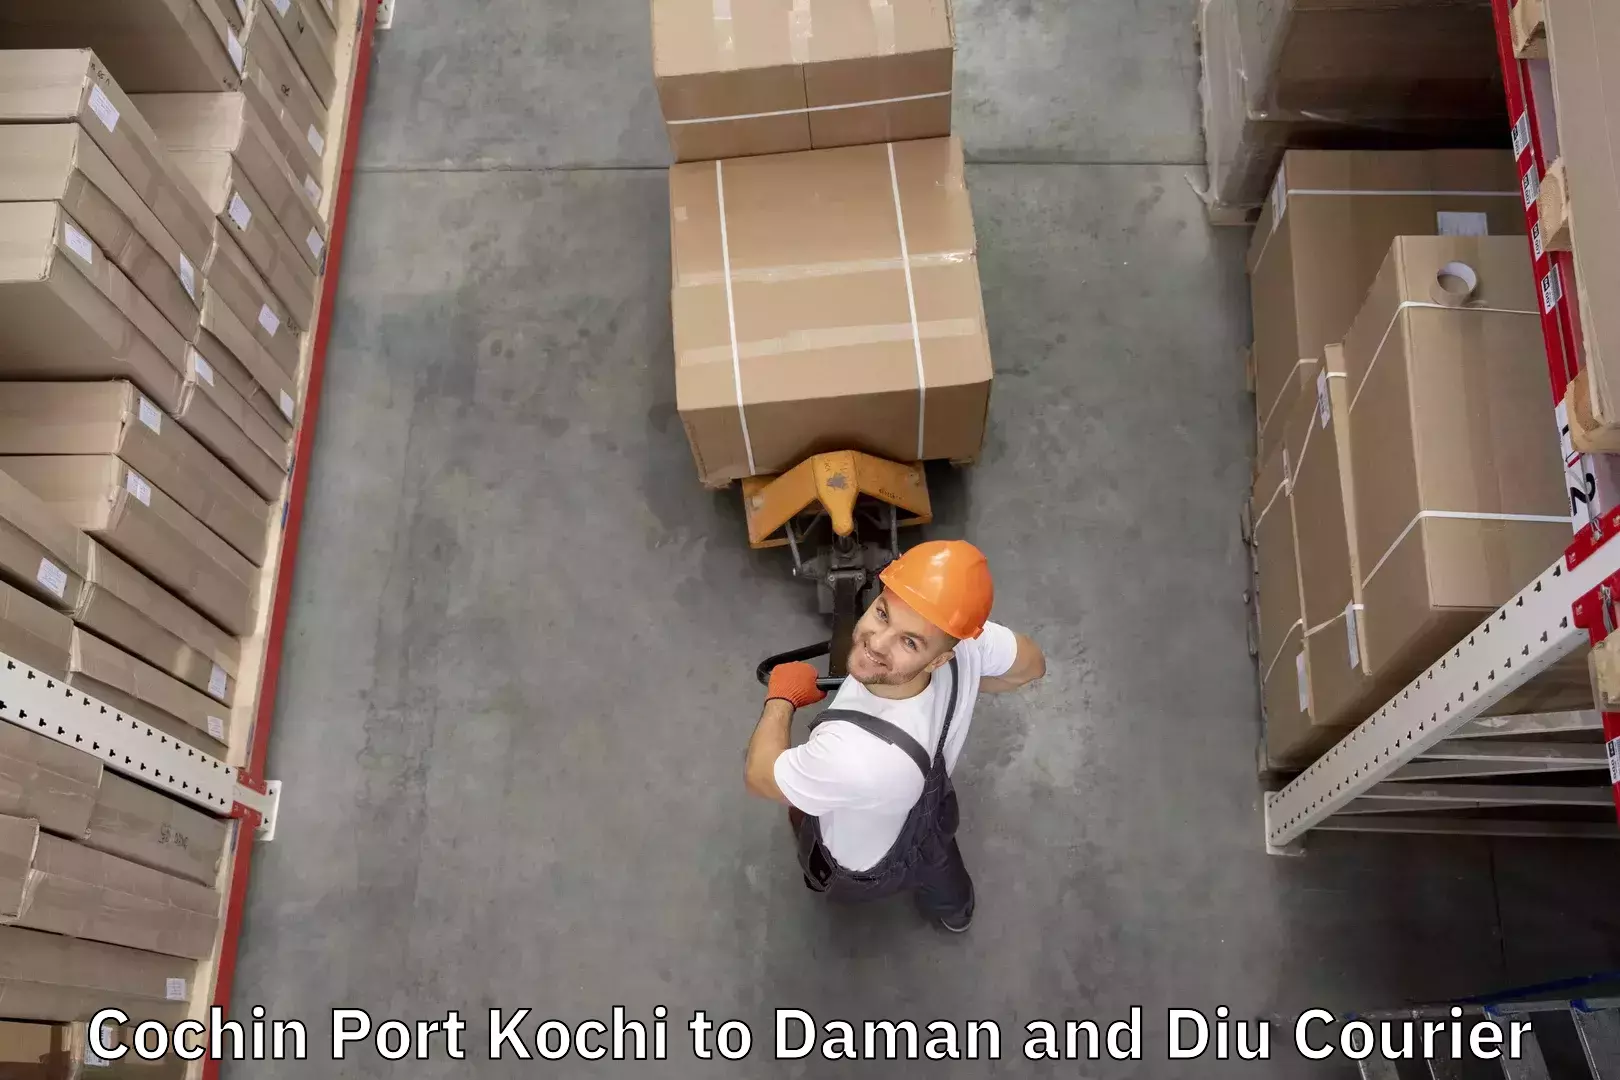 Baggage relocation service Cochin Port Kochi to Diu